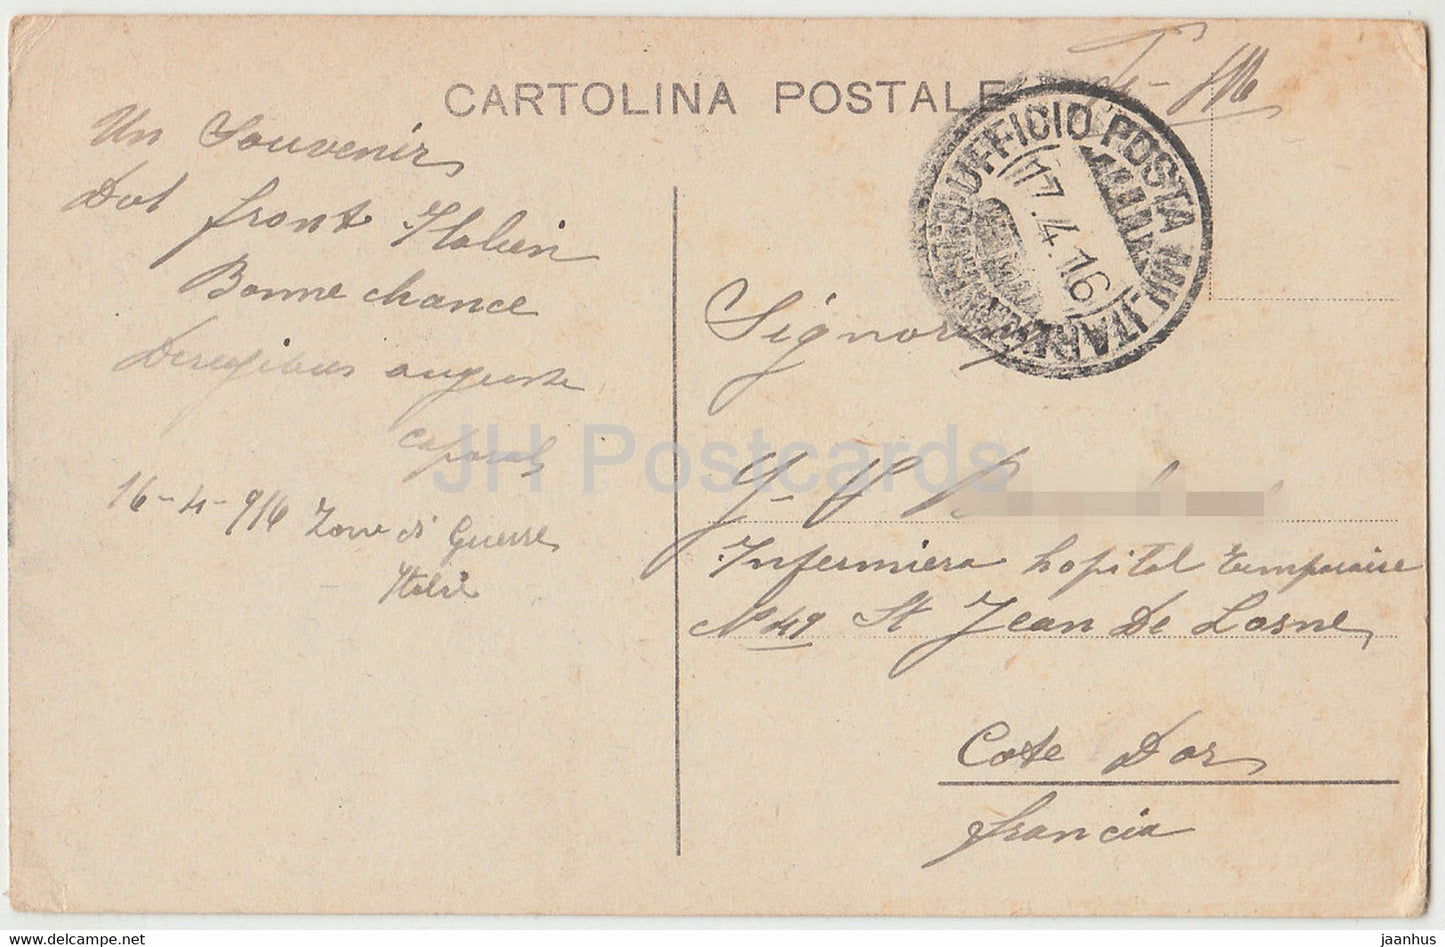 Fior dell'Alpe il Ciclamiino - fleurs rouges - carte postale ancienne - 1916 - Italie - utilisé